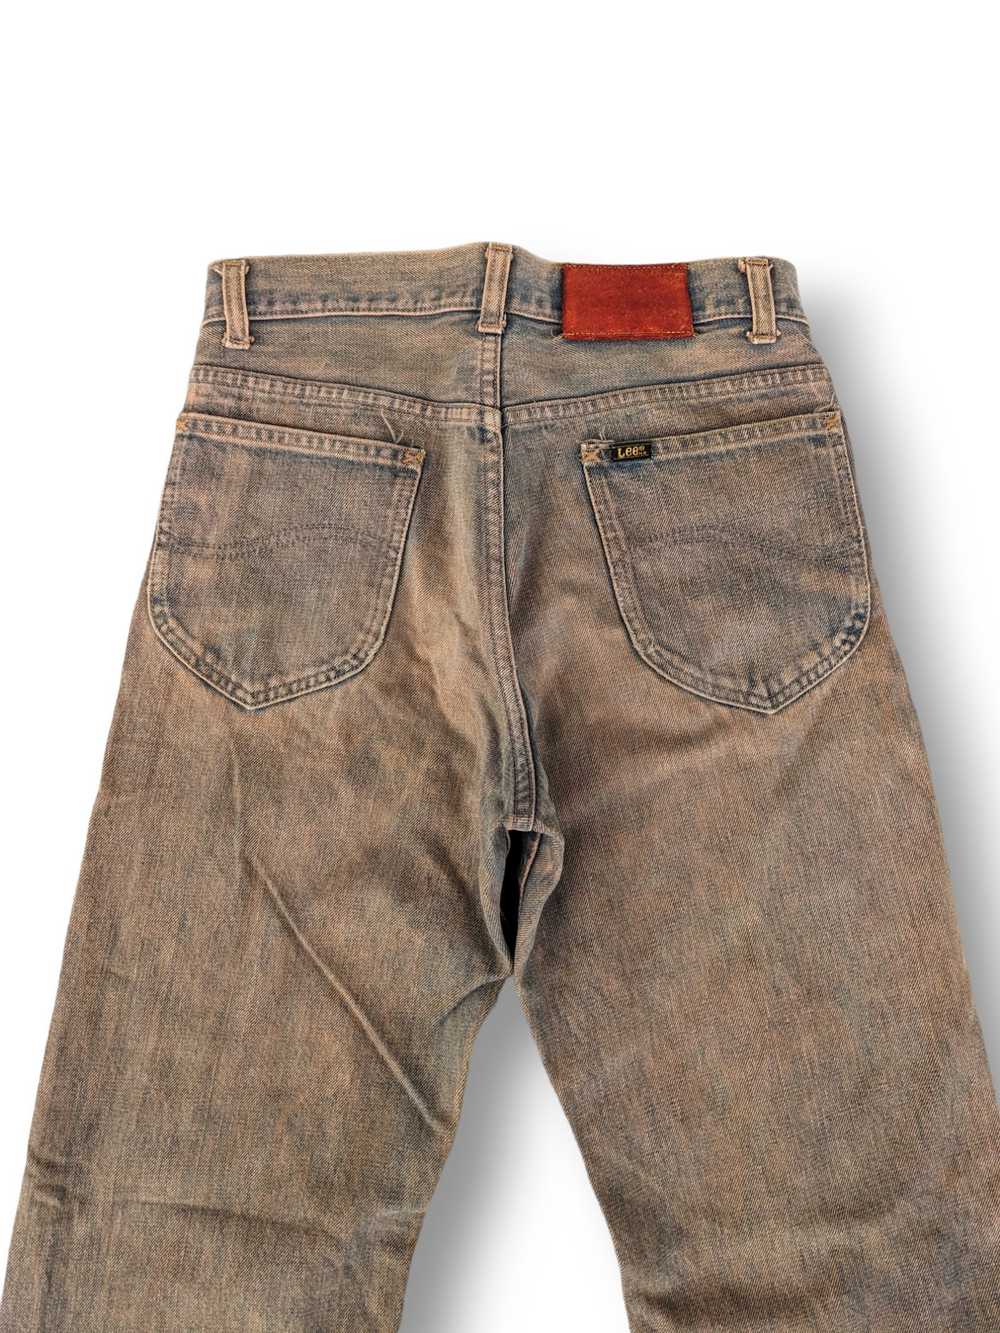 Lee × Vintage Rare Vintage Mr. Lee 80s Jeans Made… - image 5